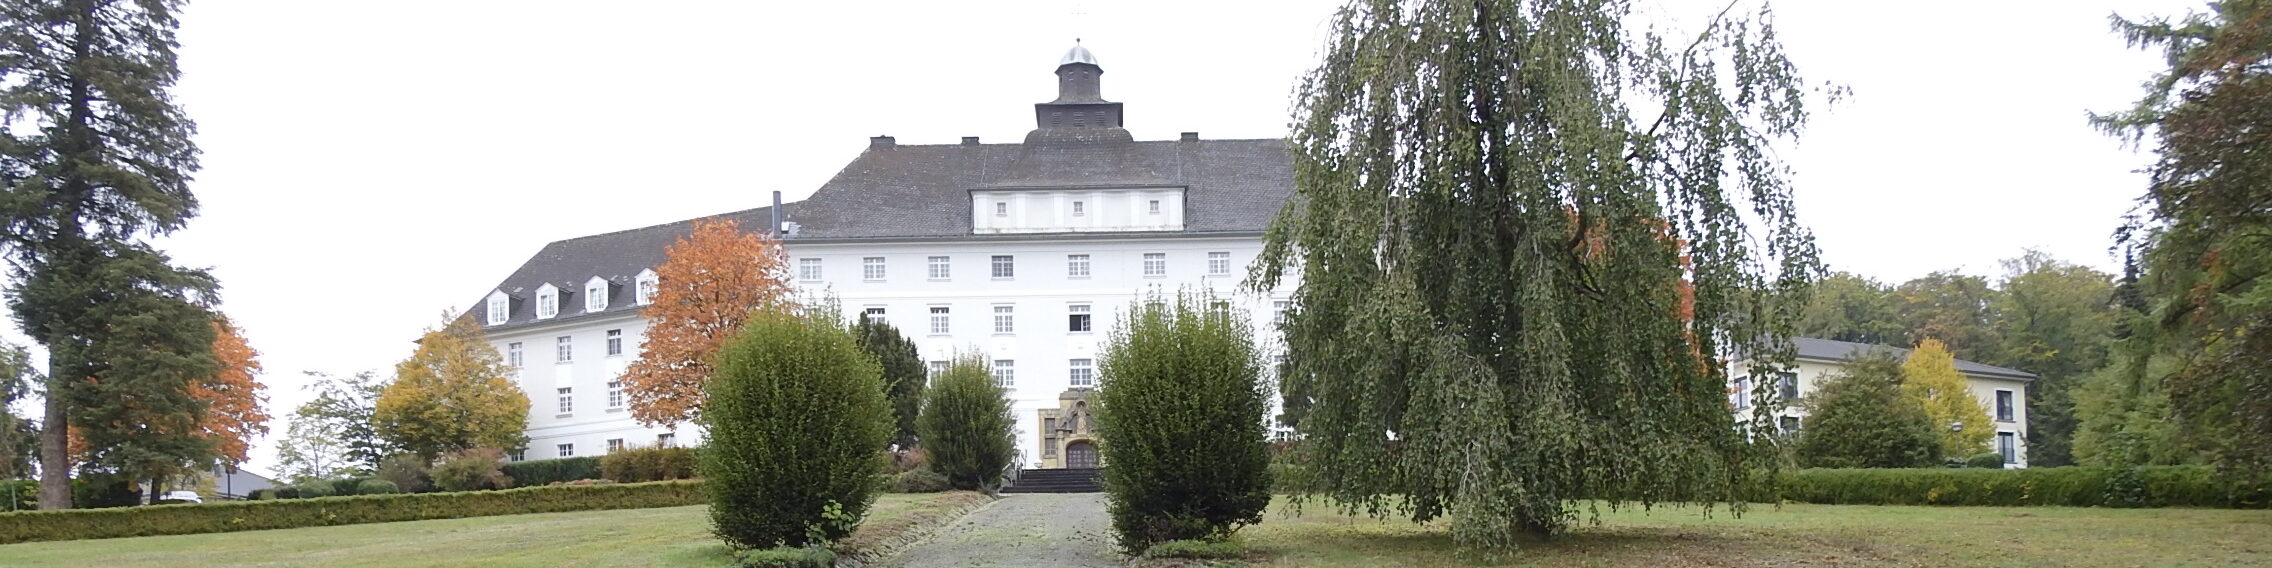 Das ehemalige Kloster der Pallottiner in Olpe